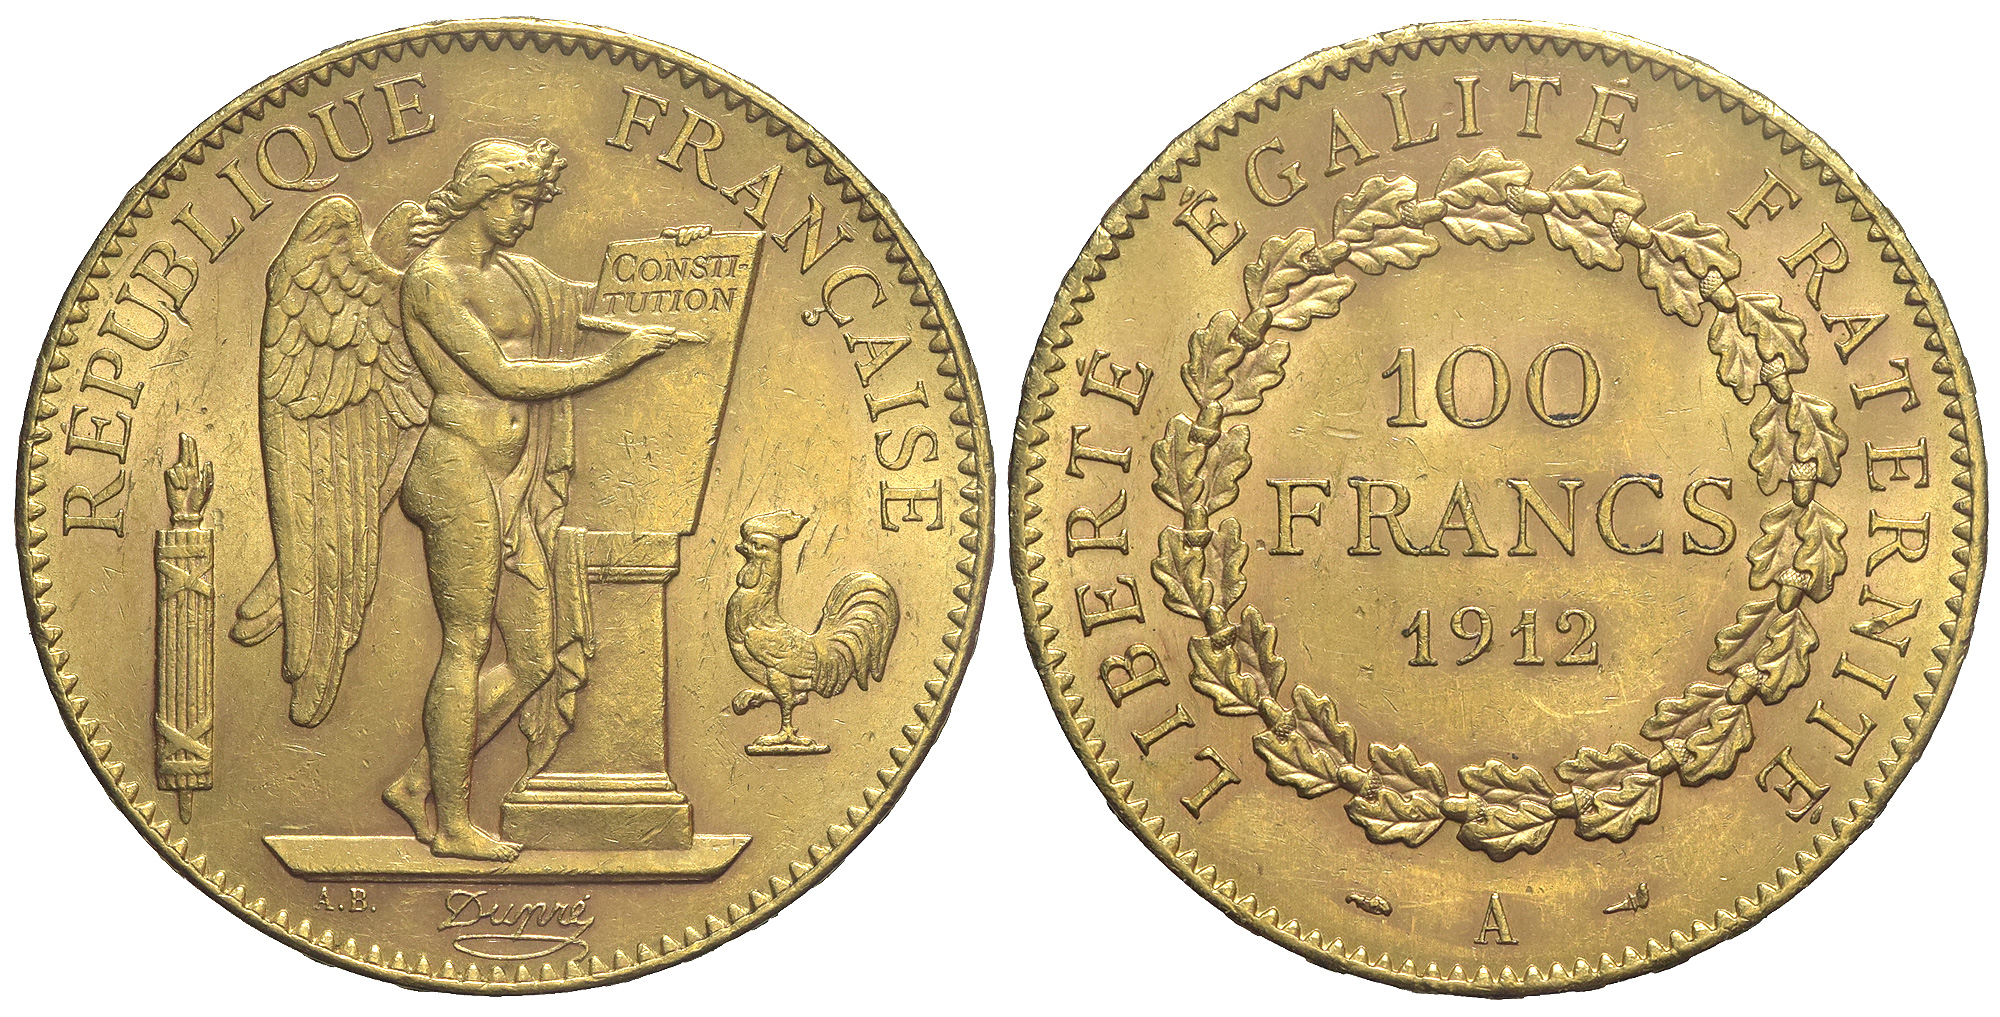 France Third Republic Francs 1912 Gold 